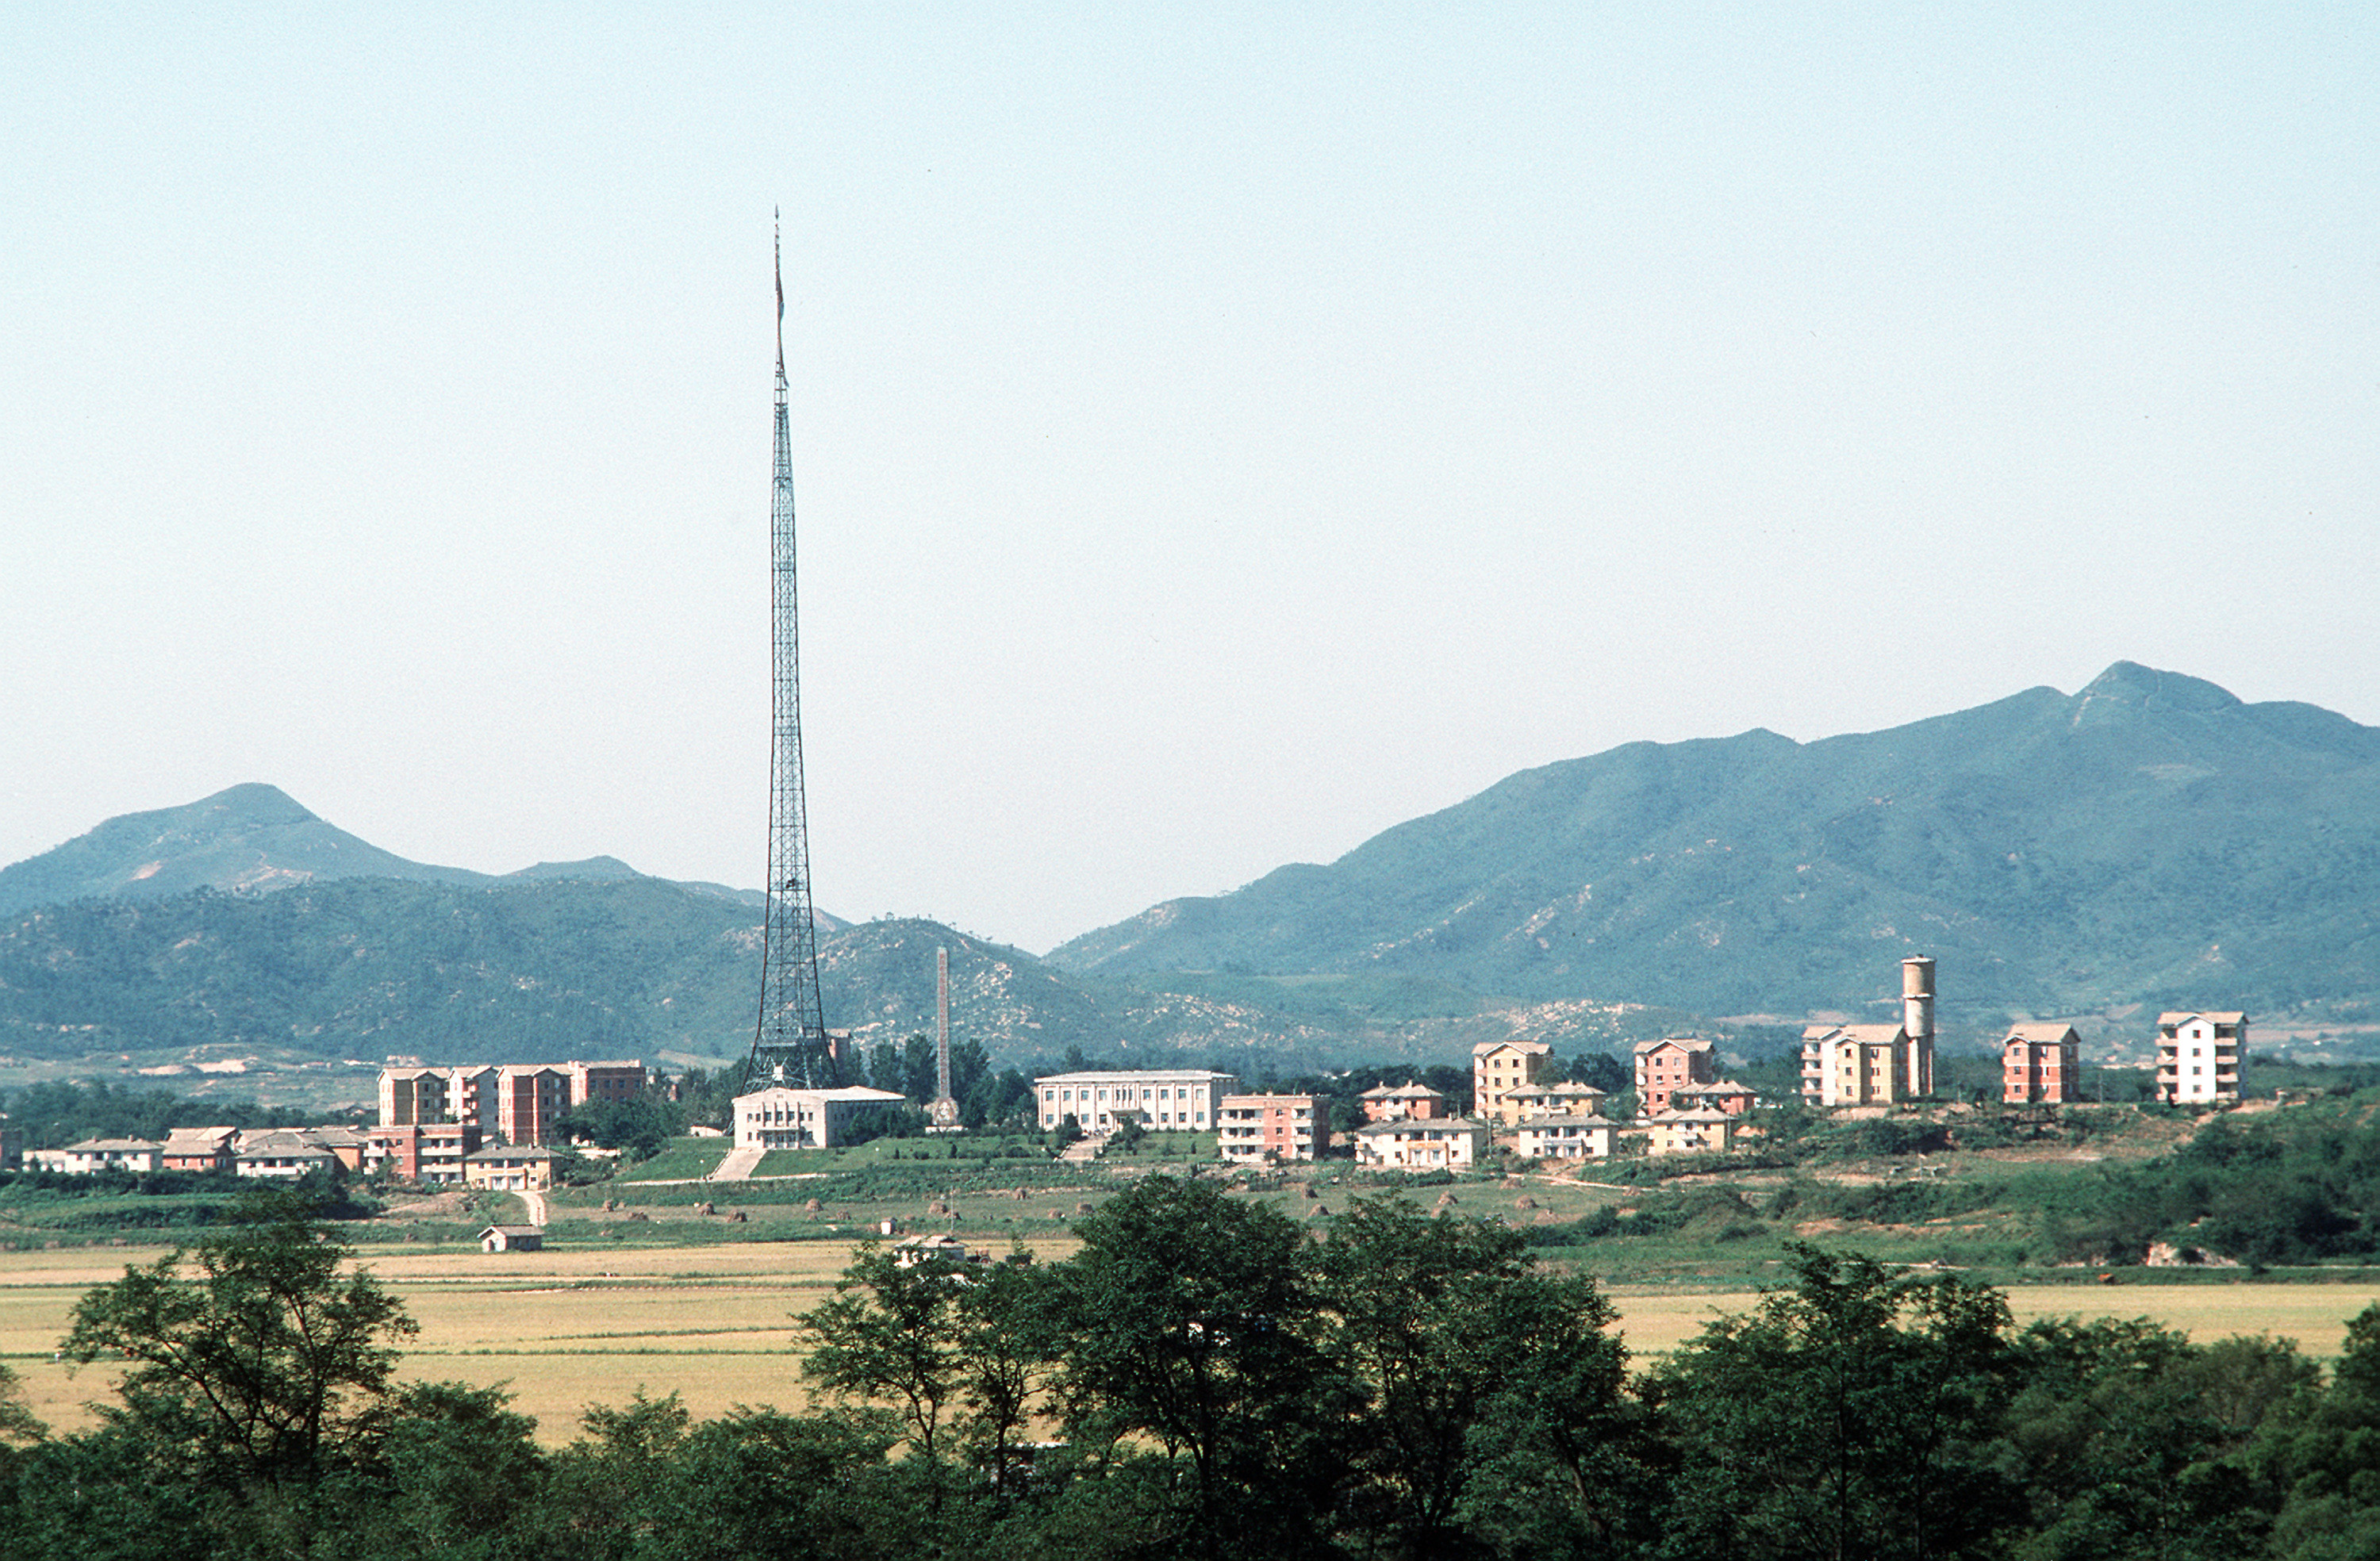 Kijong-dong